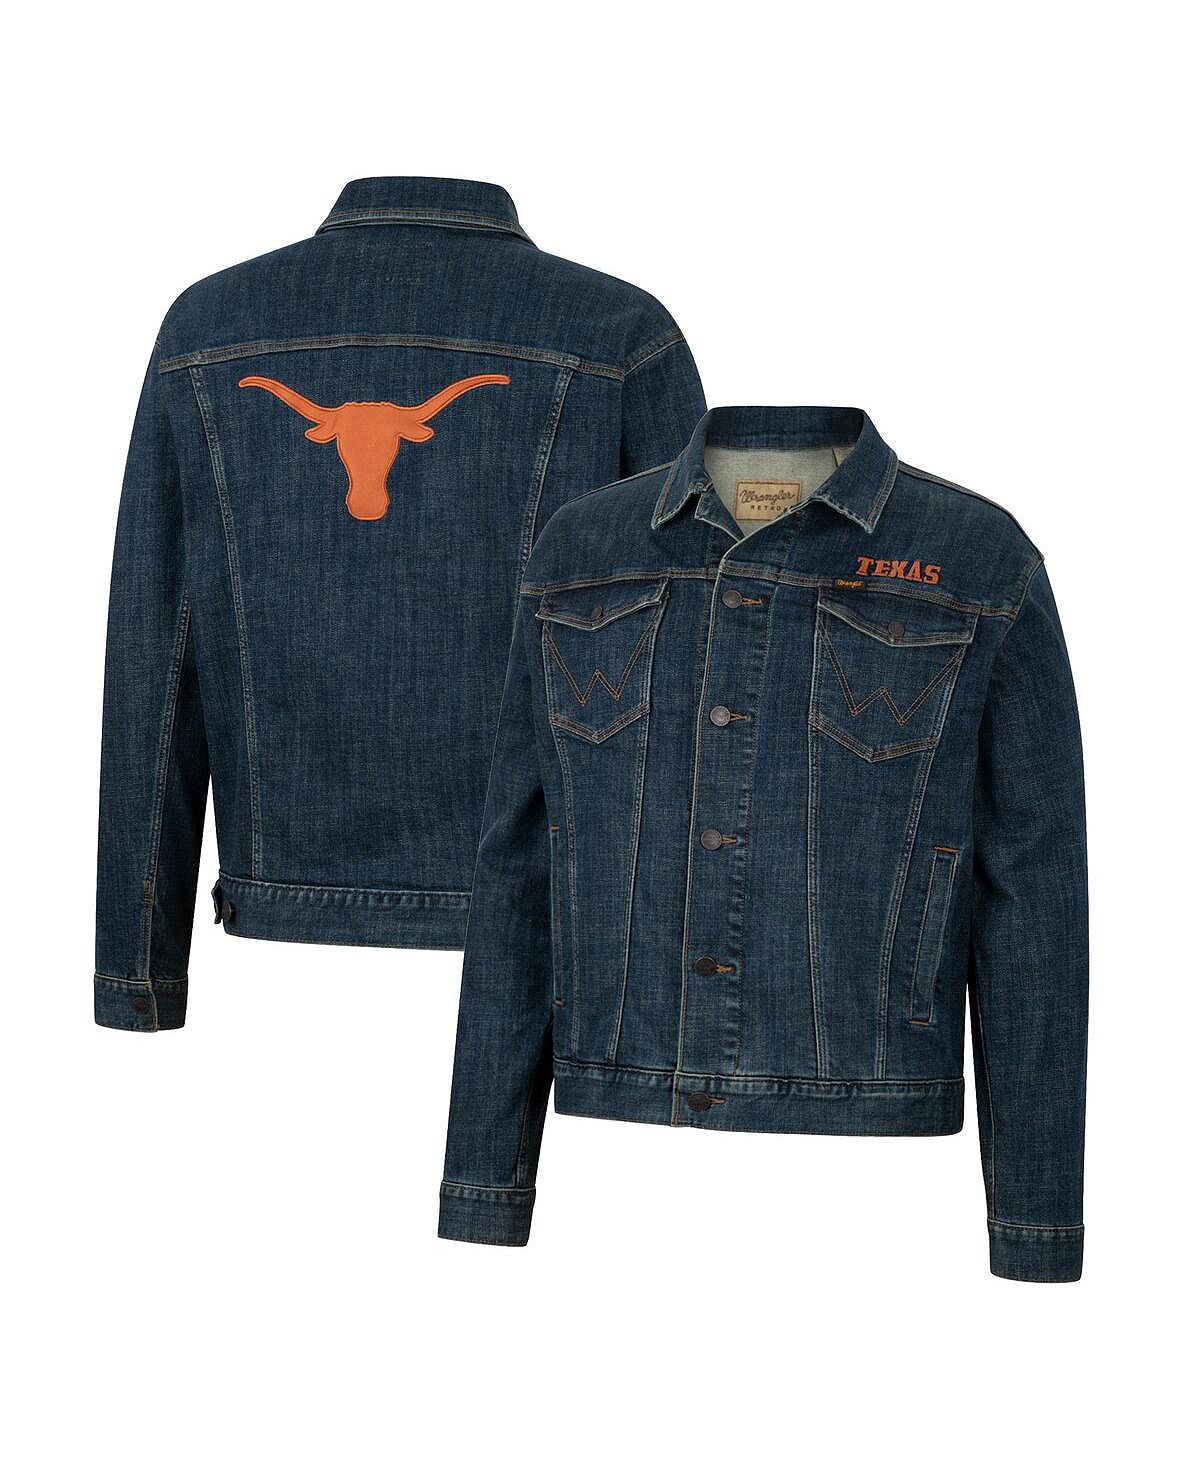 Мужская джинсовая куртка на пуговицах в стиле ретро x wrangler navy texas longhorns Colosseum, синий джинсовая куртка wrangler размер m бежевый